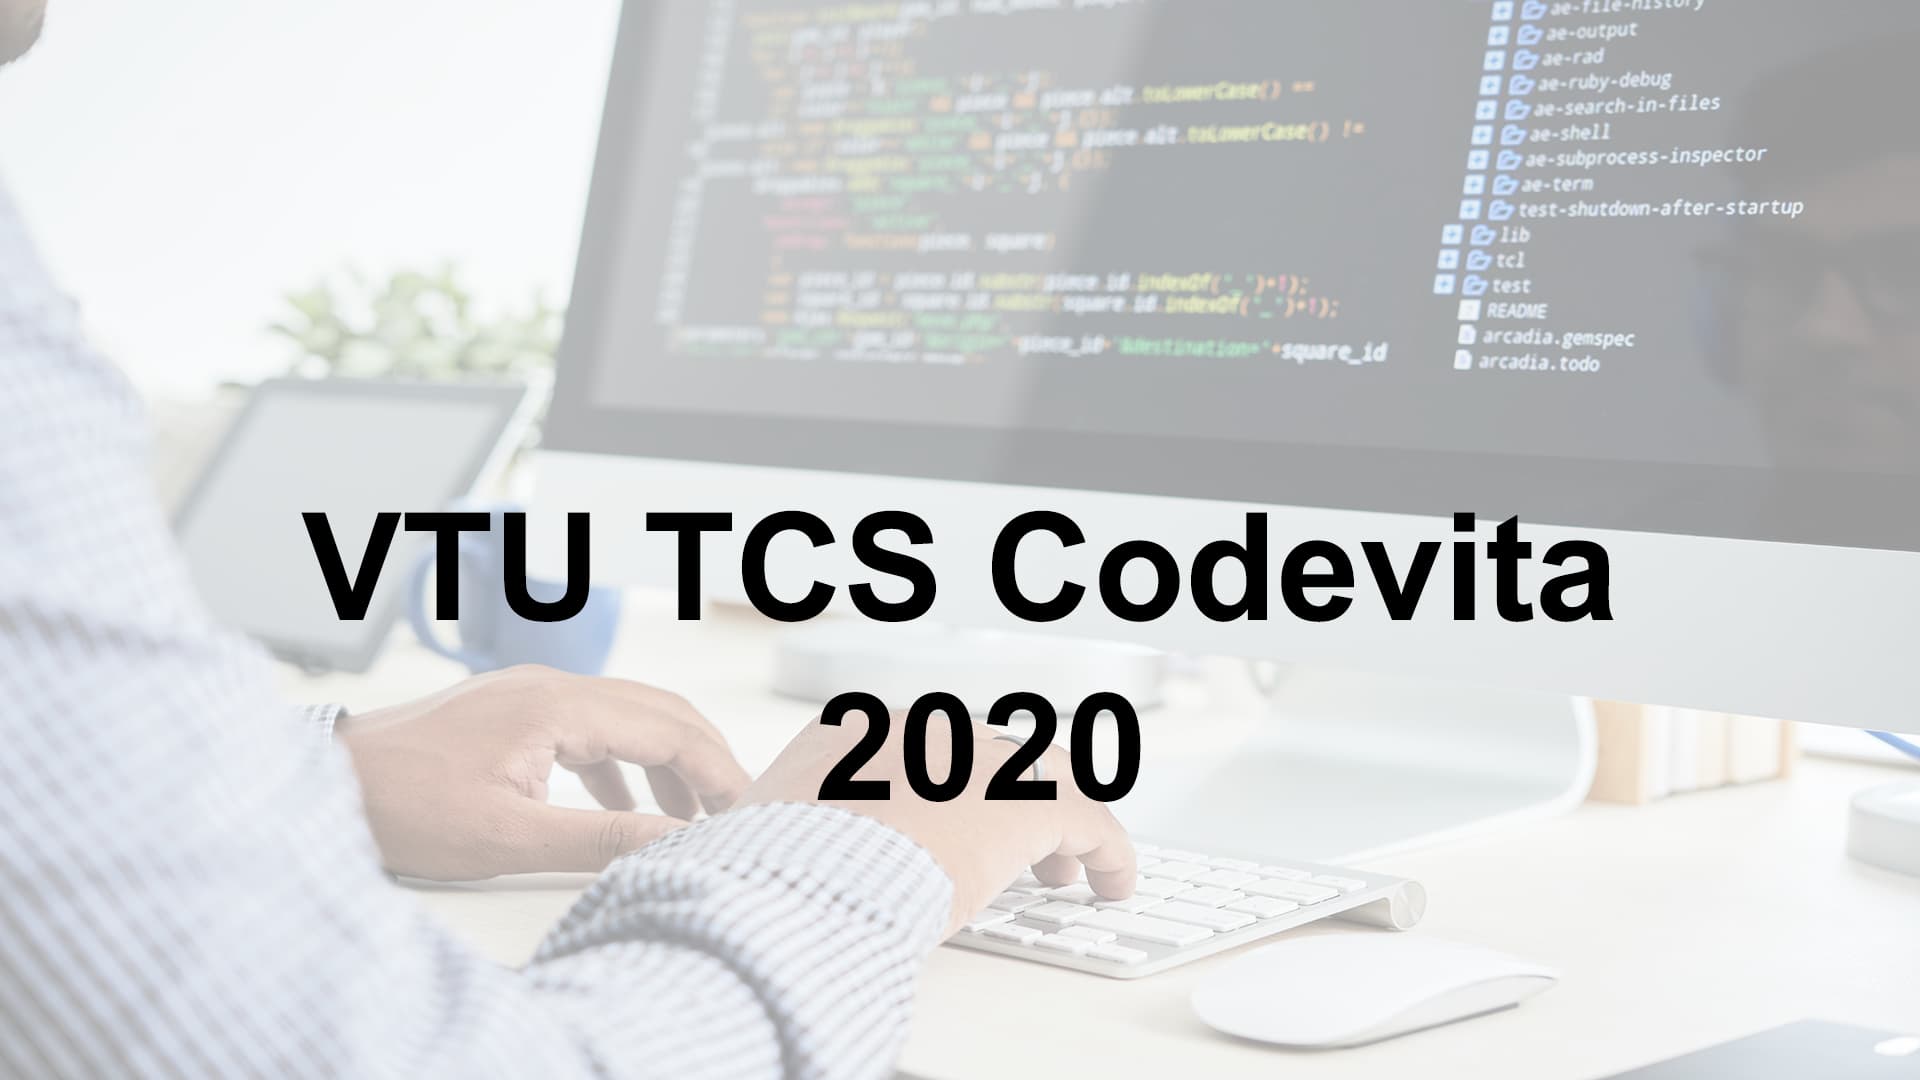 VTU TCS Codevita 2020